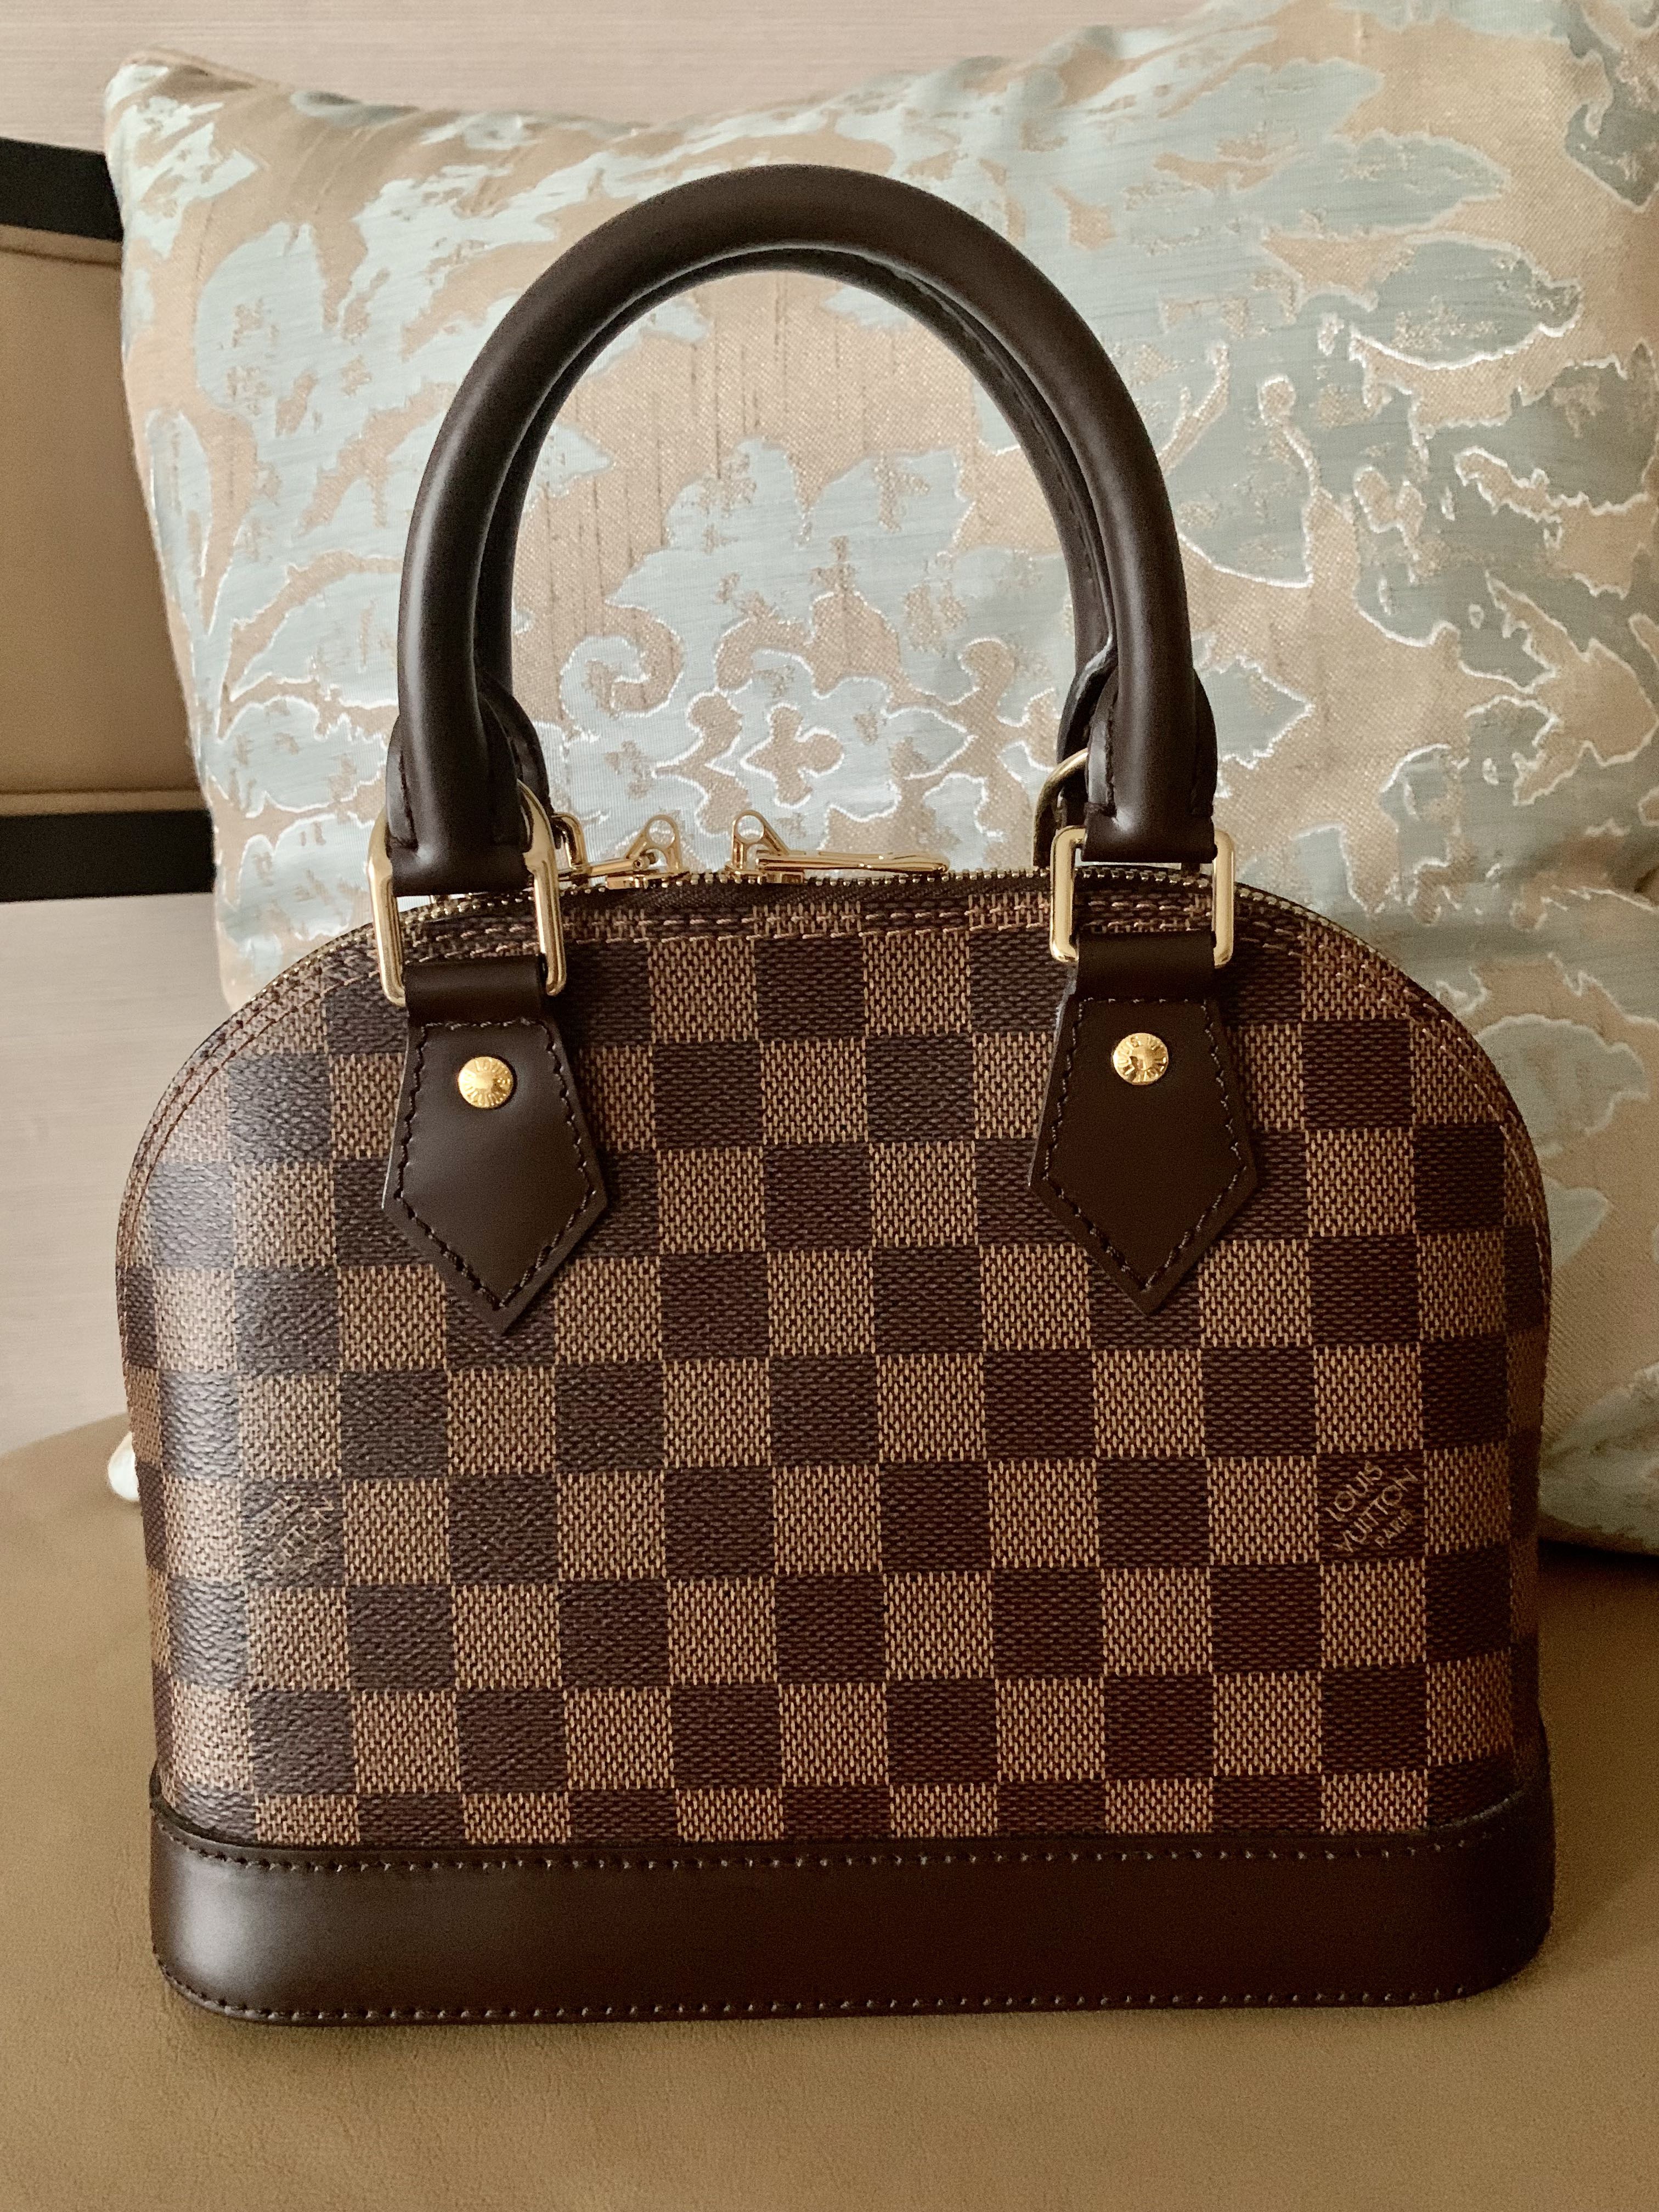 ALMA BB Honest REVIEW: Best Affordable Louis Vuitton Bag? Damier Ebene  Worth It?